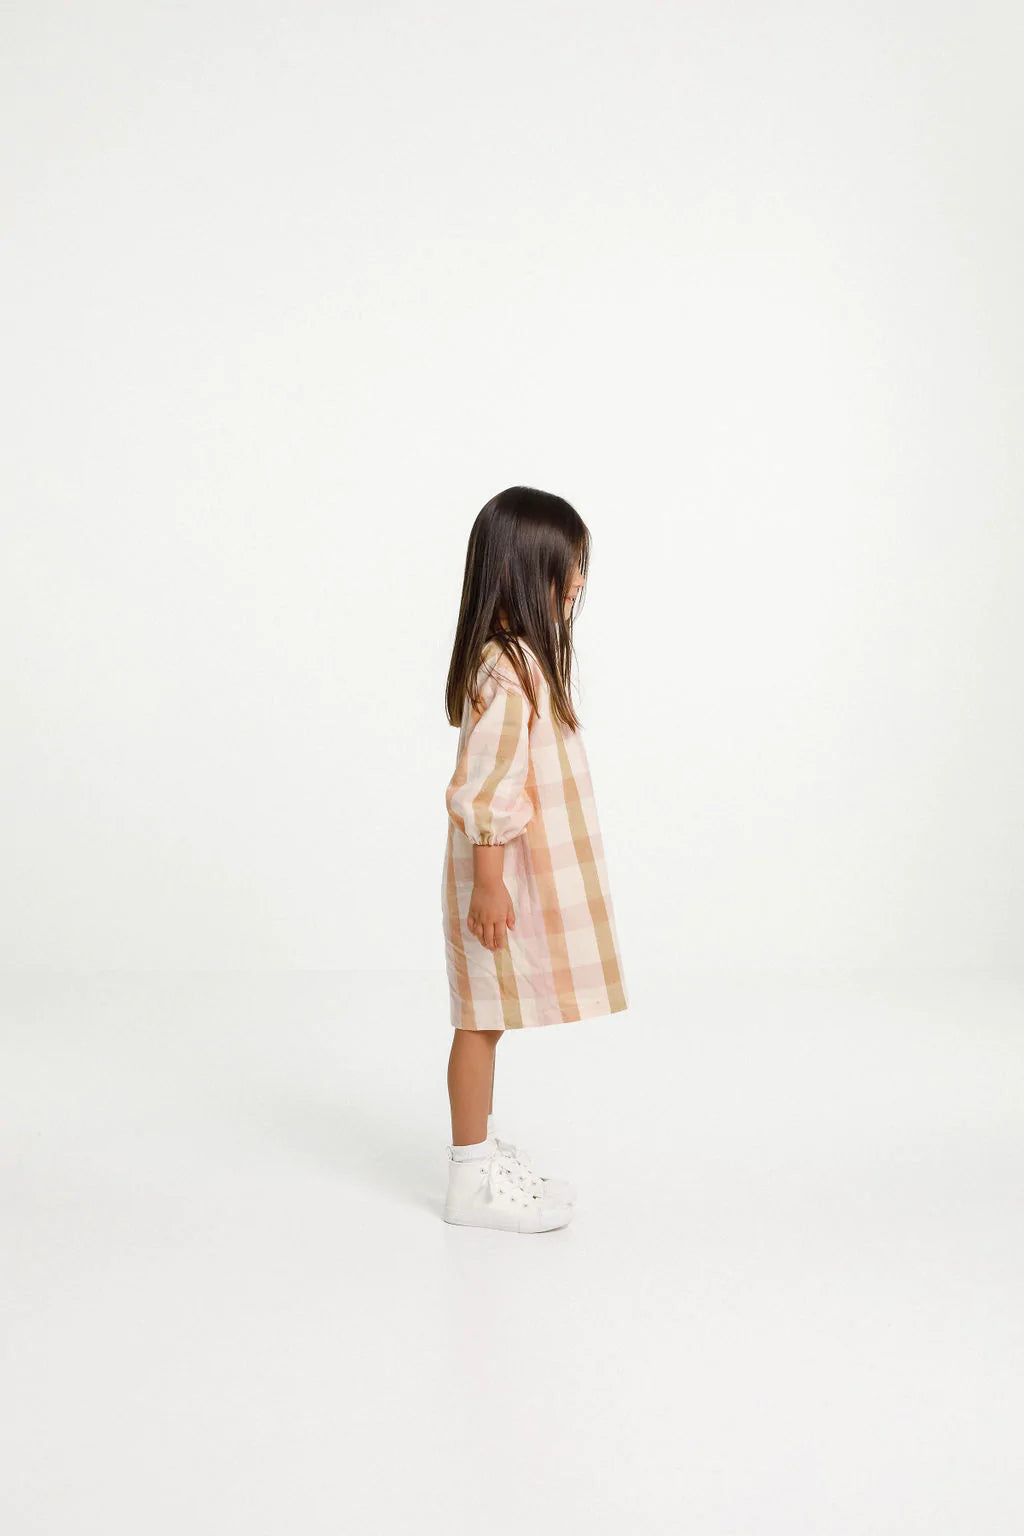 Papercut - Array Top & Dress - Kids